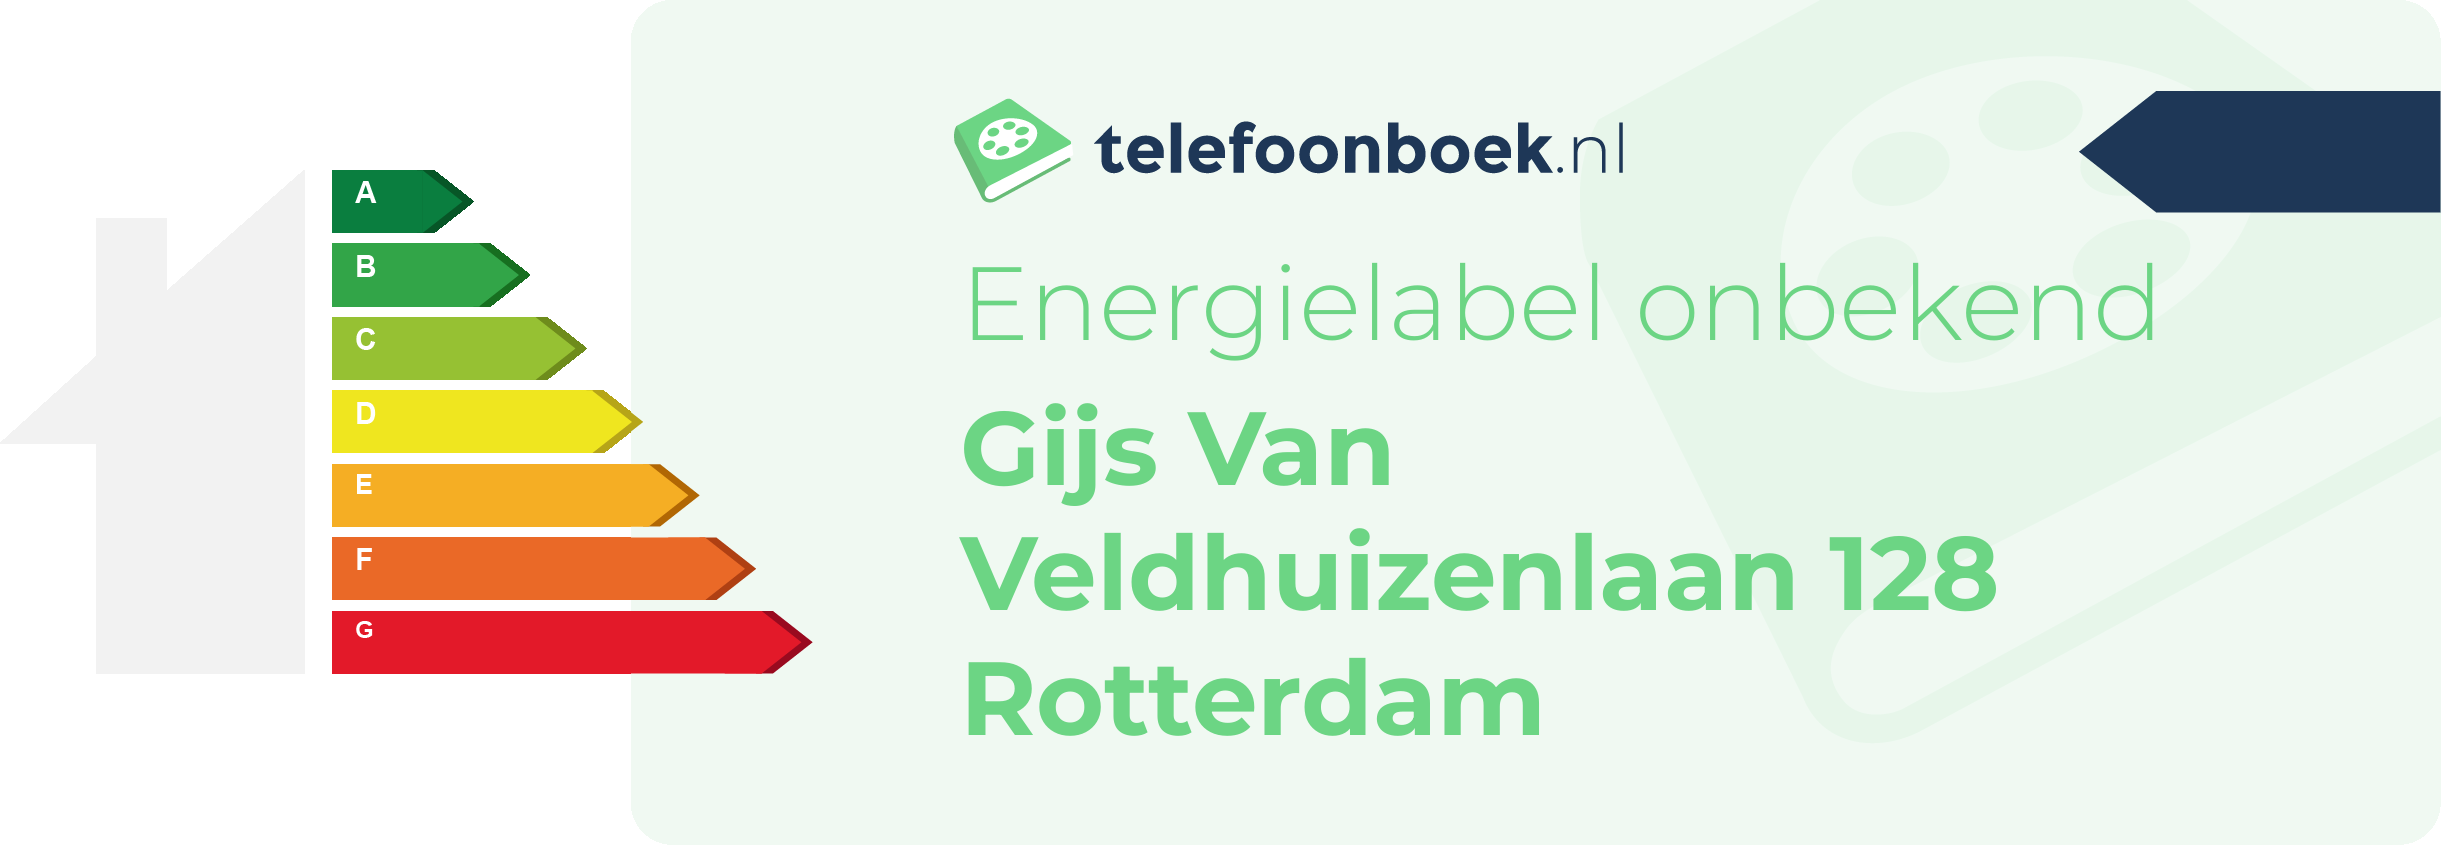 Energielabel Gijs Van Veldhuizenlaan 128 Rotterdam